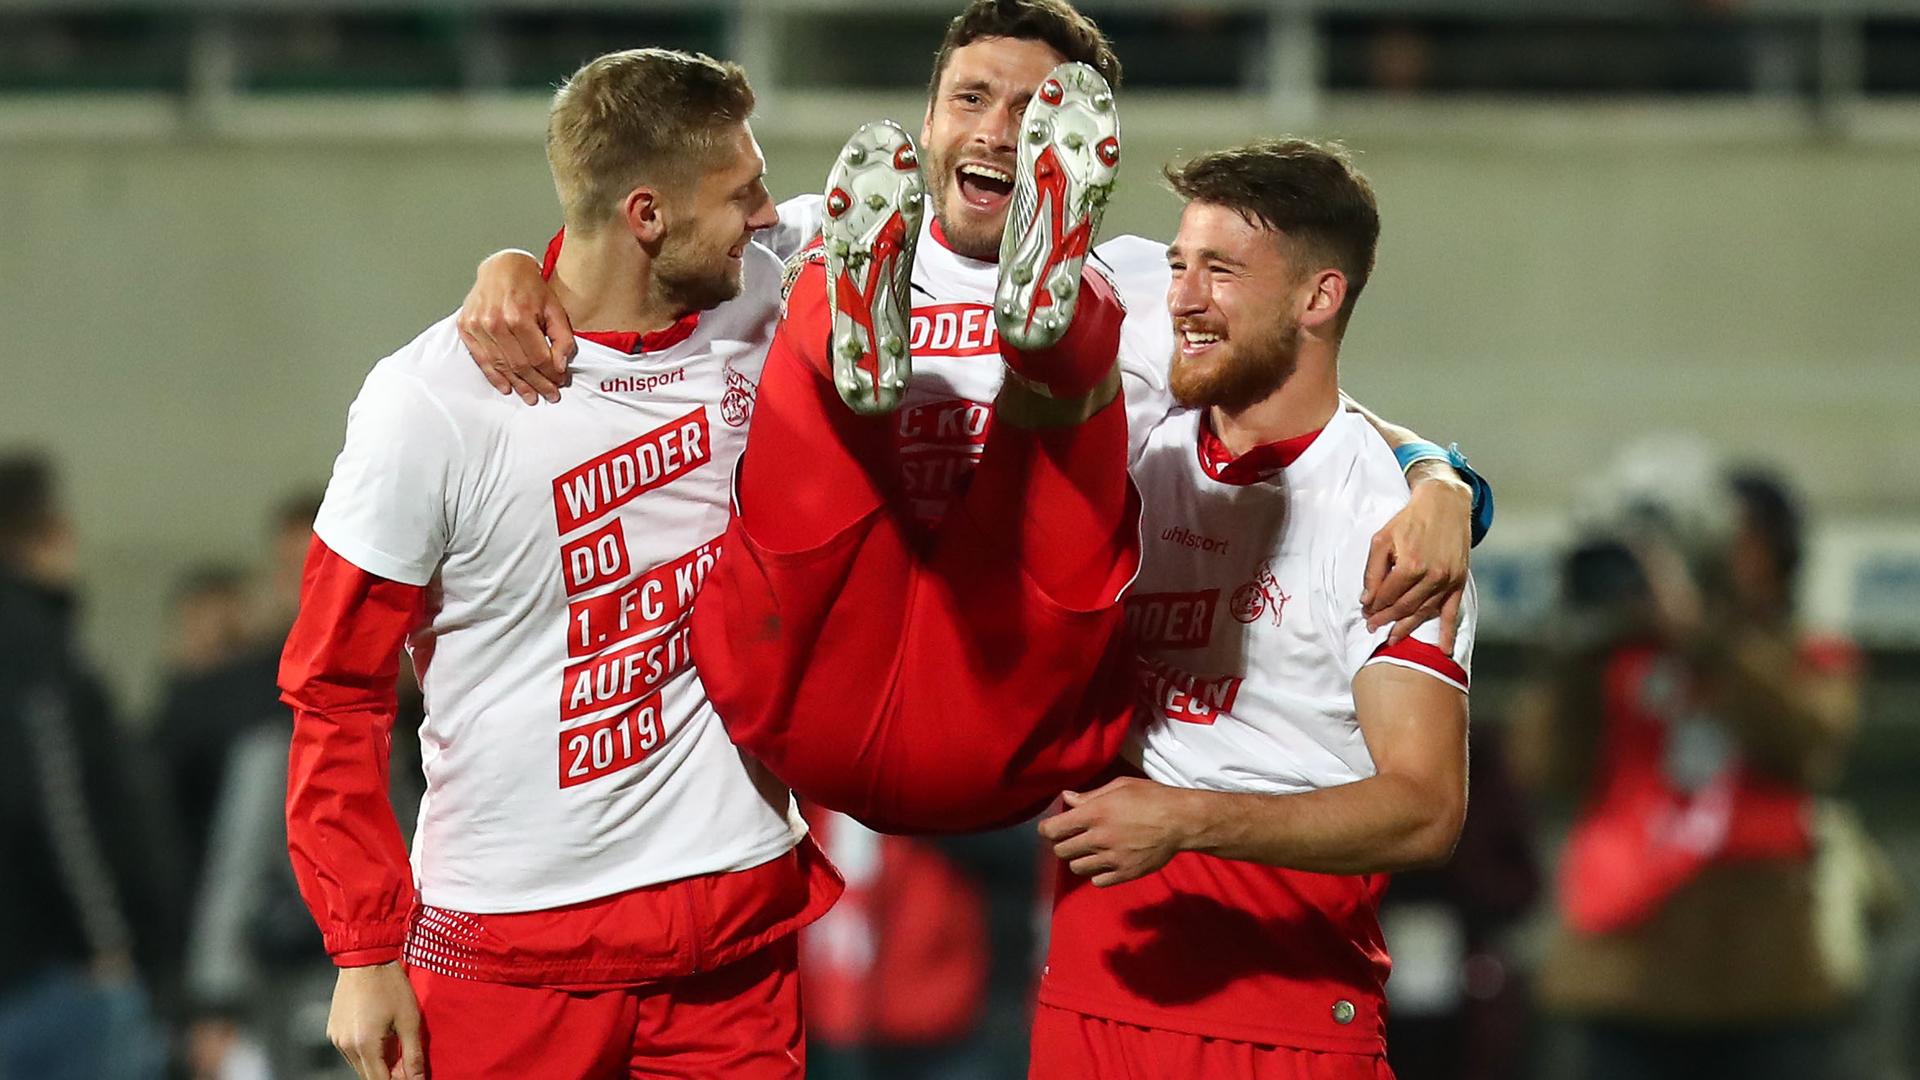 Spieler des 1. FC Köln jubeln in Tshirts mit der Aufschrift "Widder Do" nach Aufstieg 2019